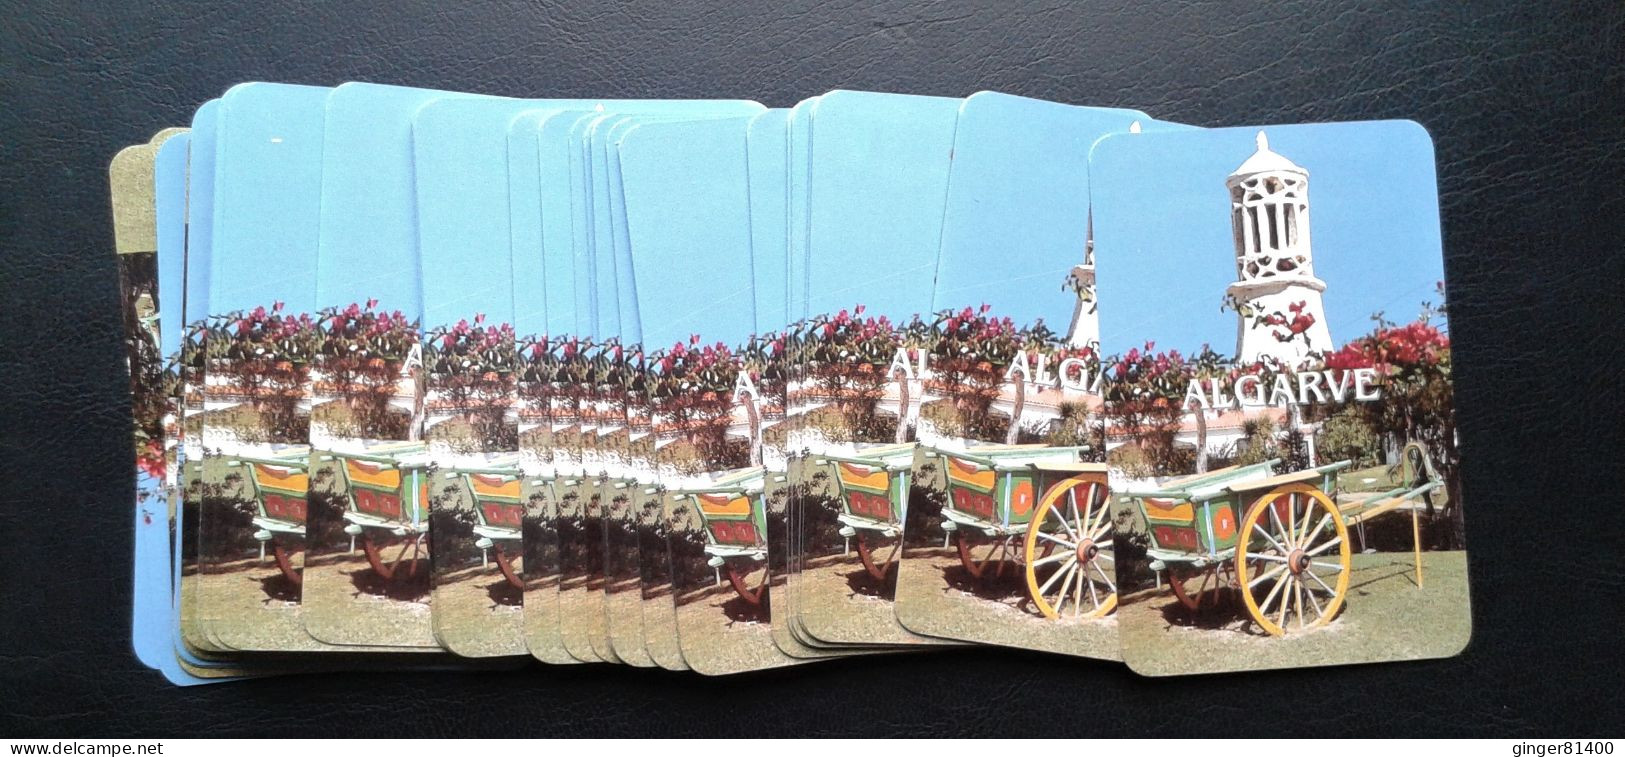 Très joli jeu complet 54 cartes ALGARVE portrait anglais très colorés en état proche du neuf